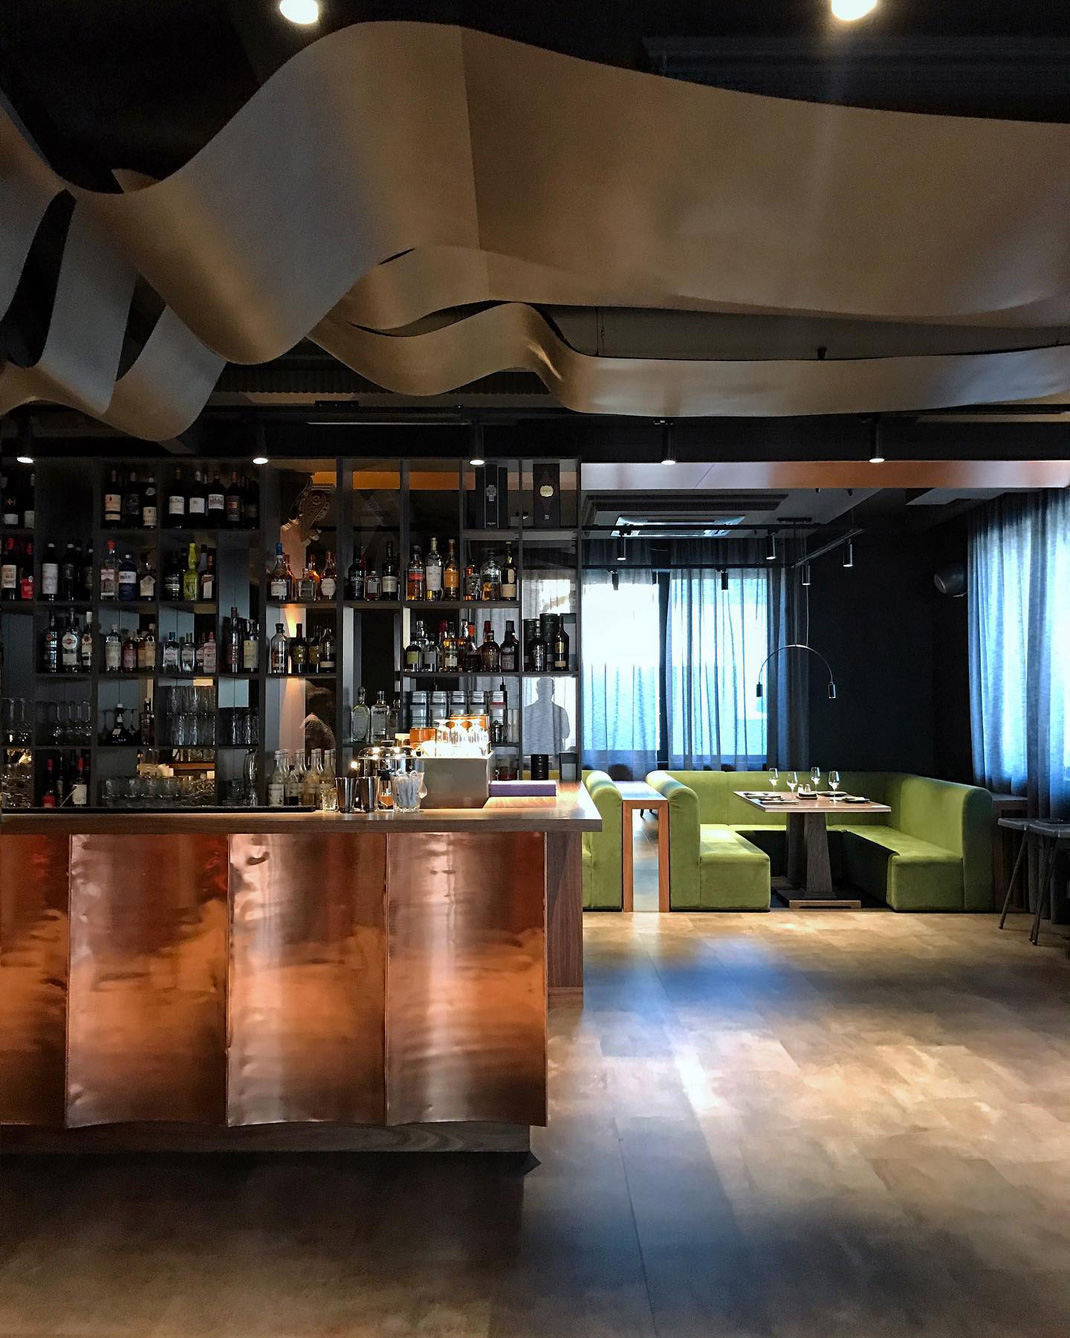 酒吧餐厅 俄罗斯 酒吧 木材 铜 石墨 logo设计 vi设计 空间设计